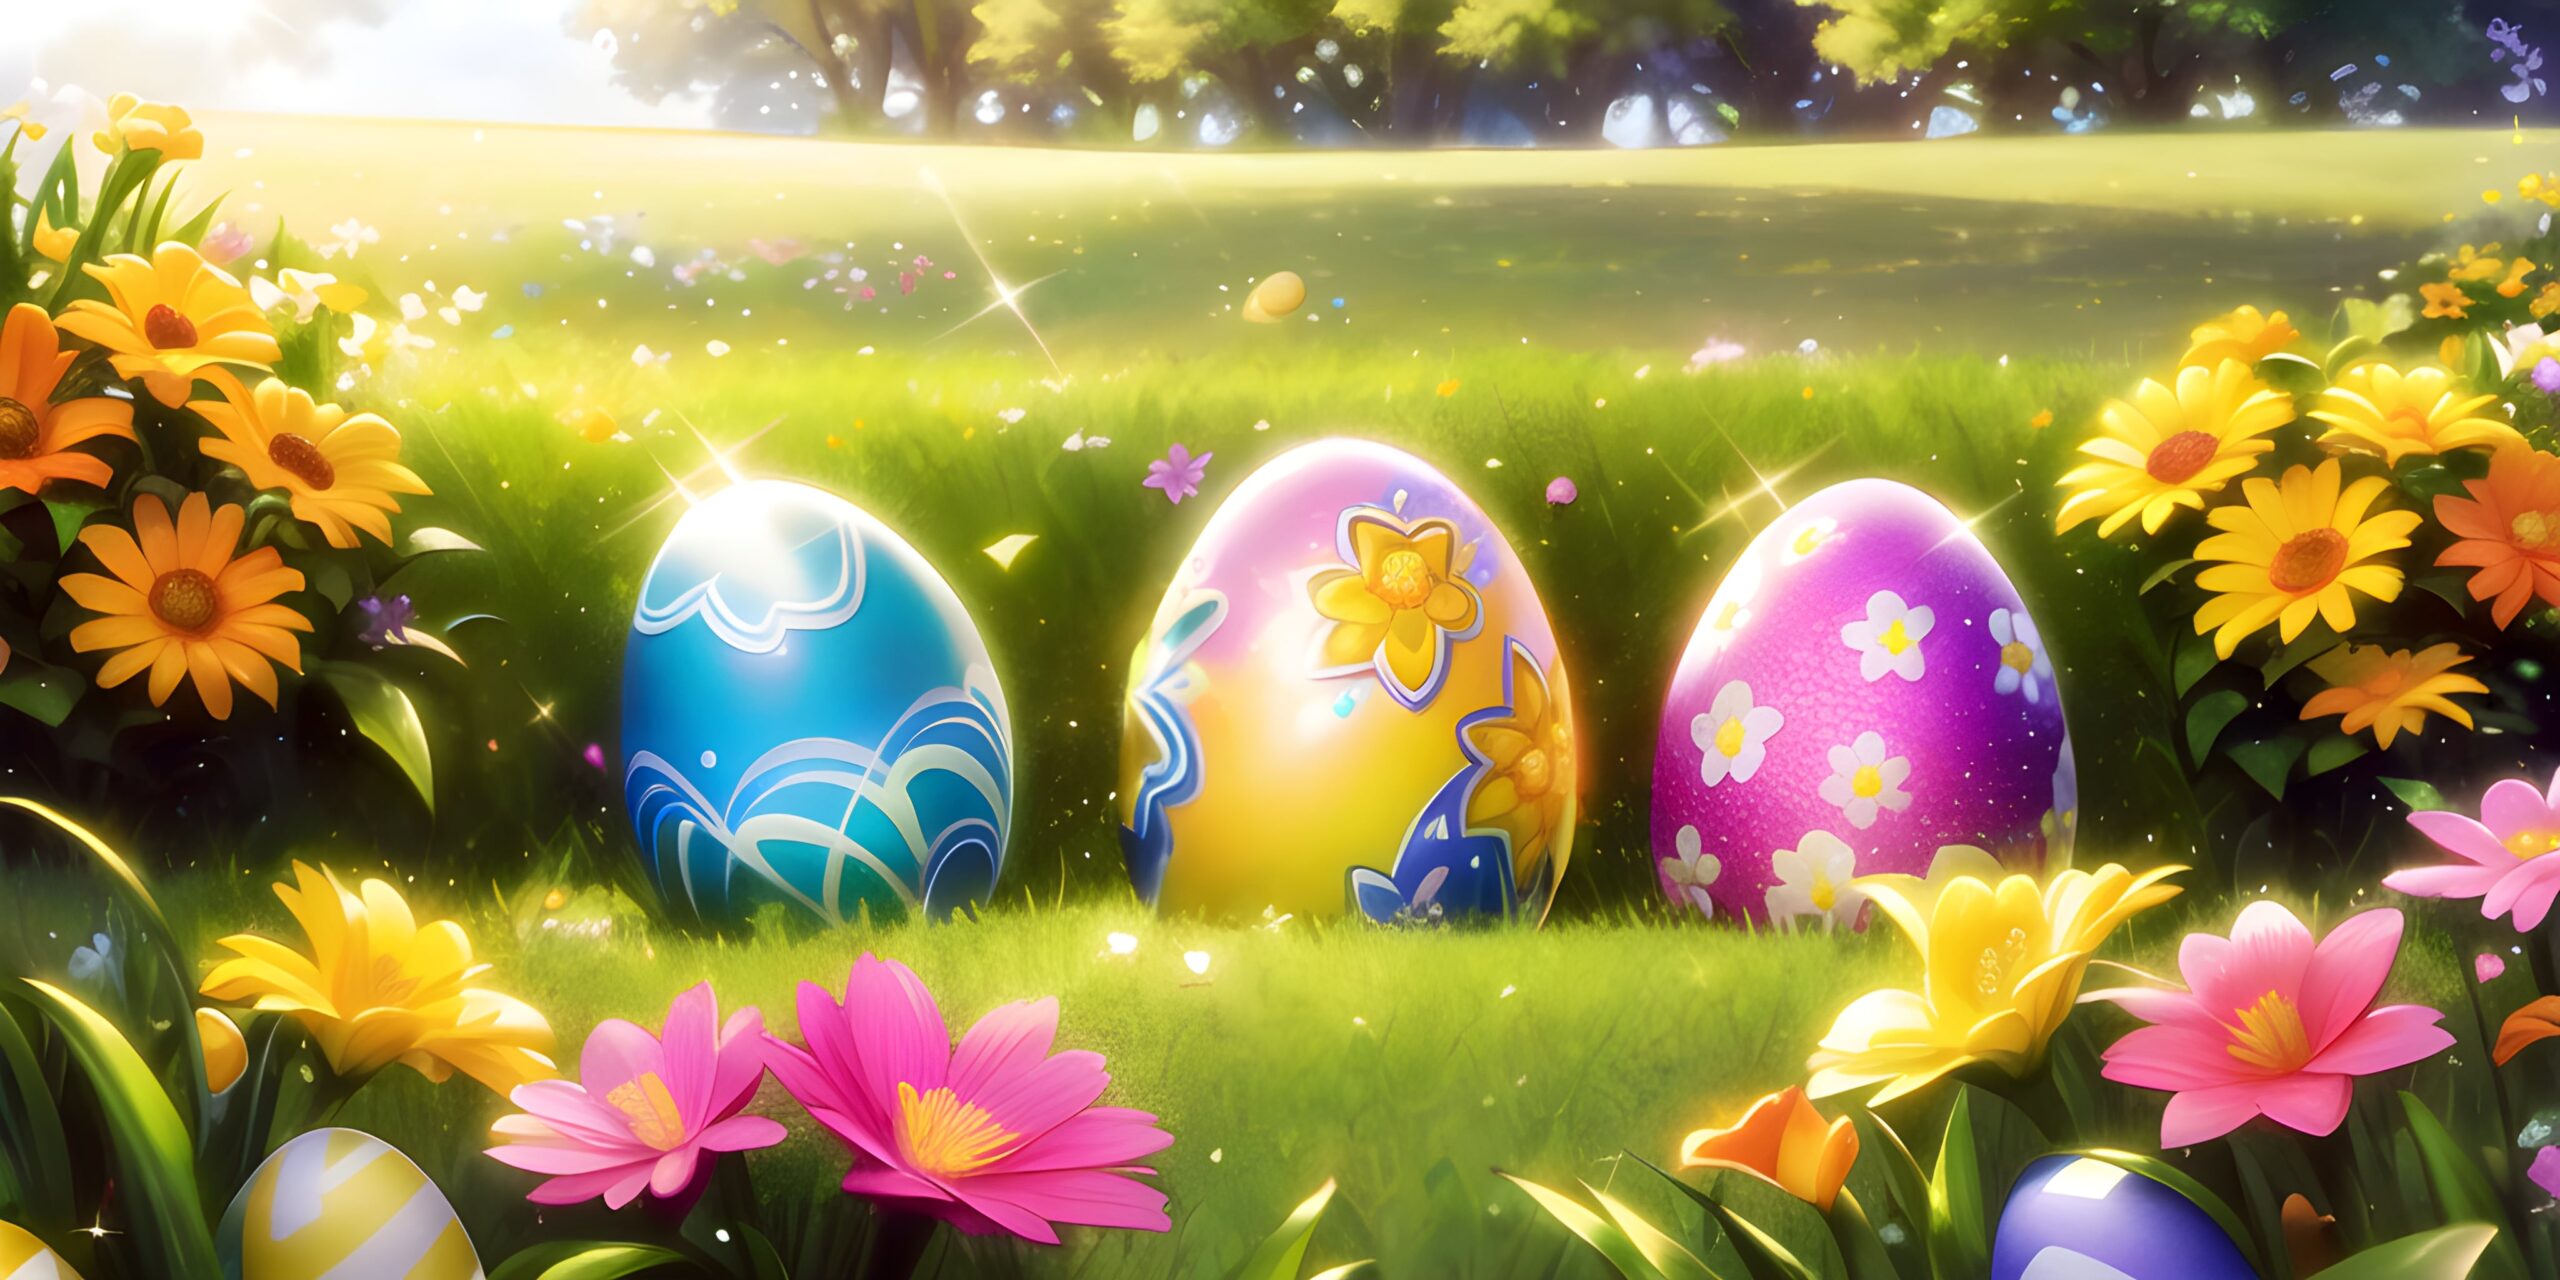 Easter Eggs in the Garden